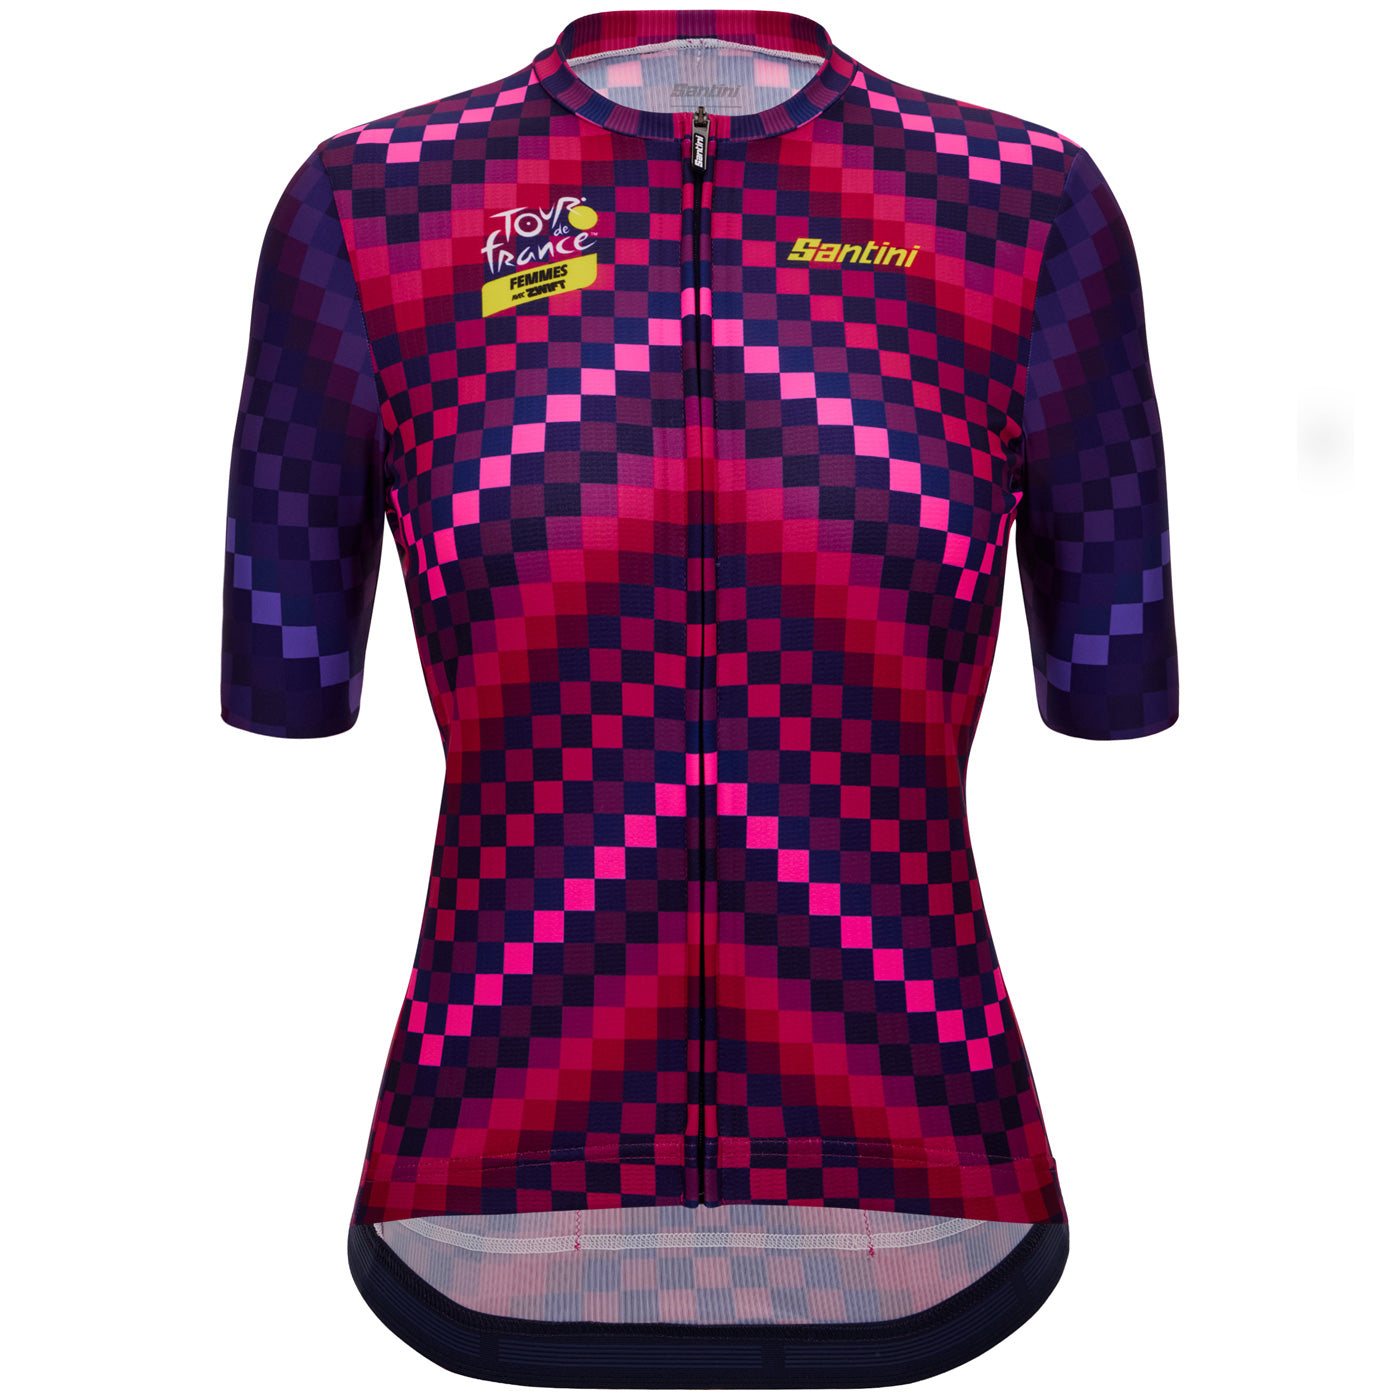 Tour de France women jersey - Tourmalet